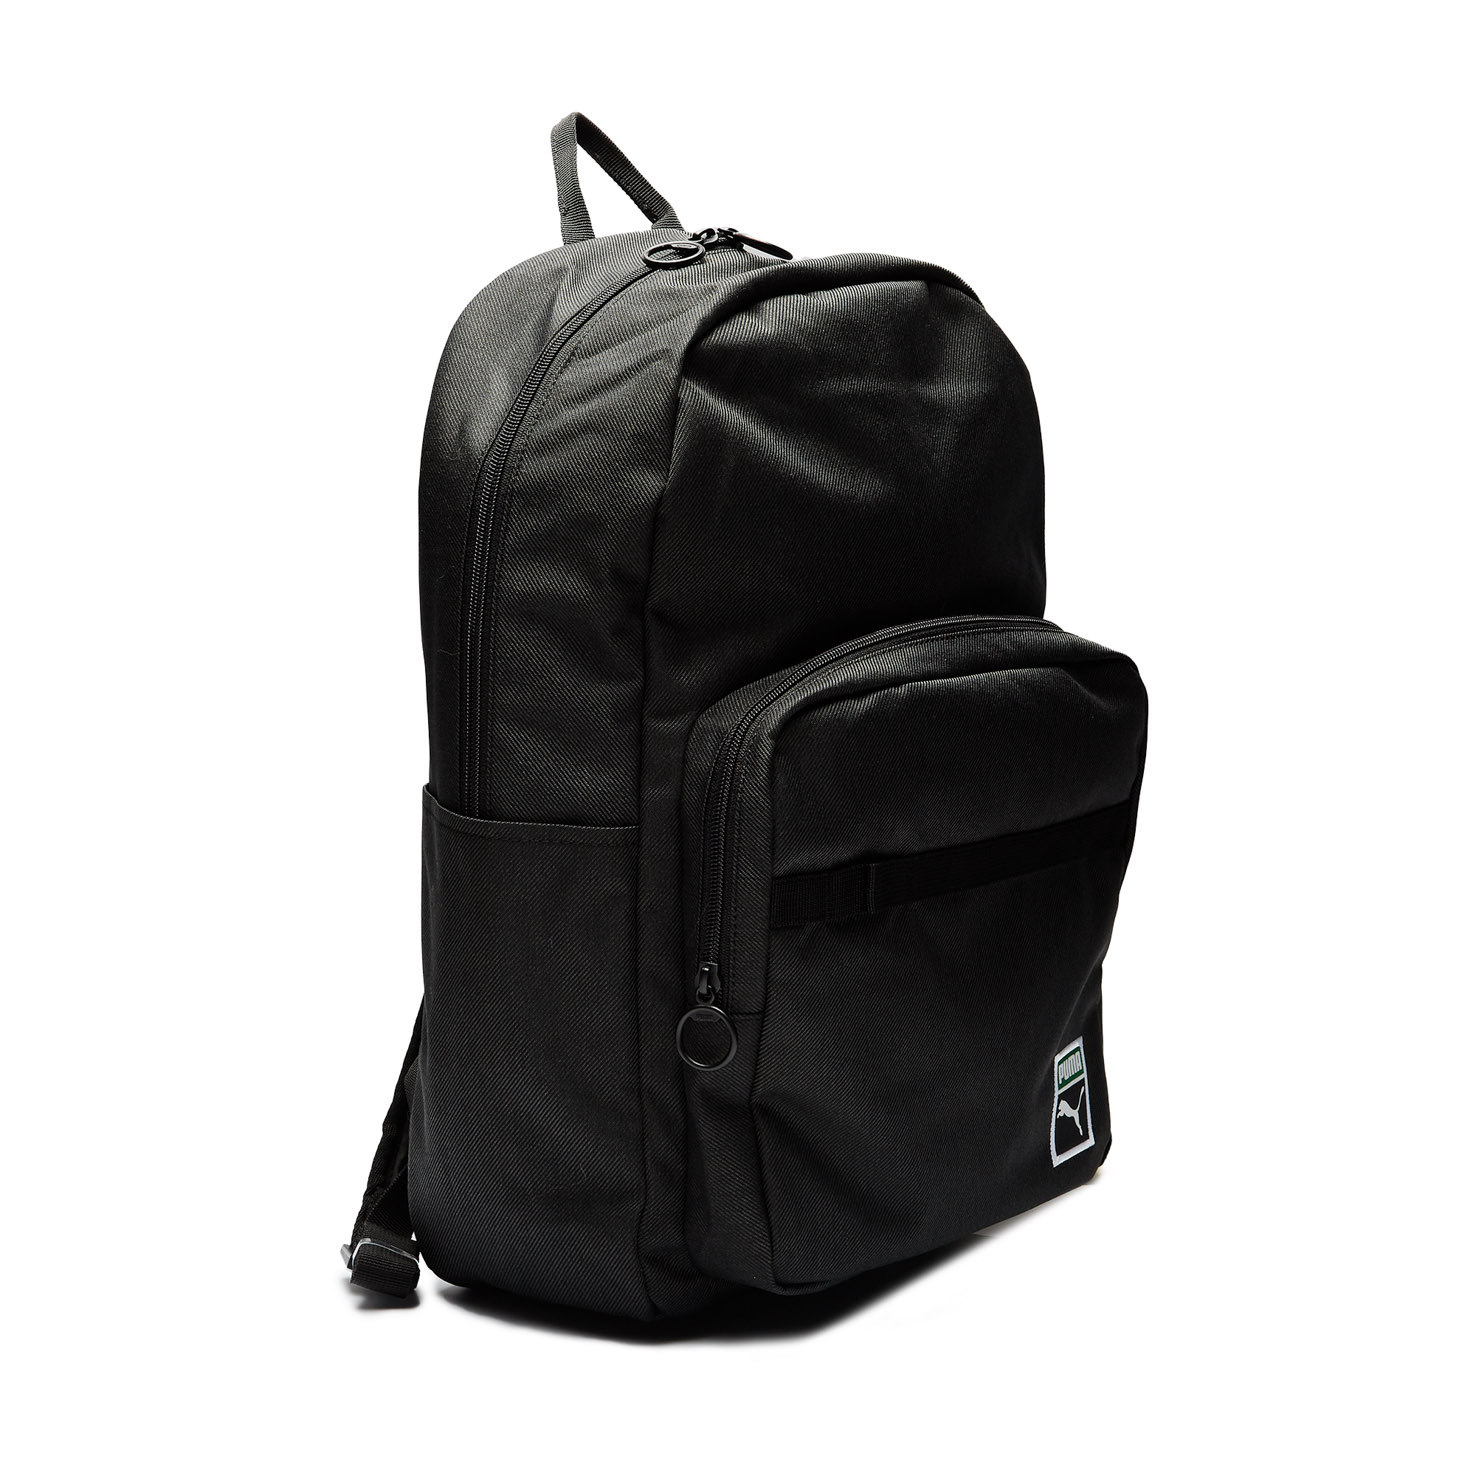 PUMA x PEANUTS Backpack PUMA, размер Один размер, цвет серый PM078009 - фото 3